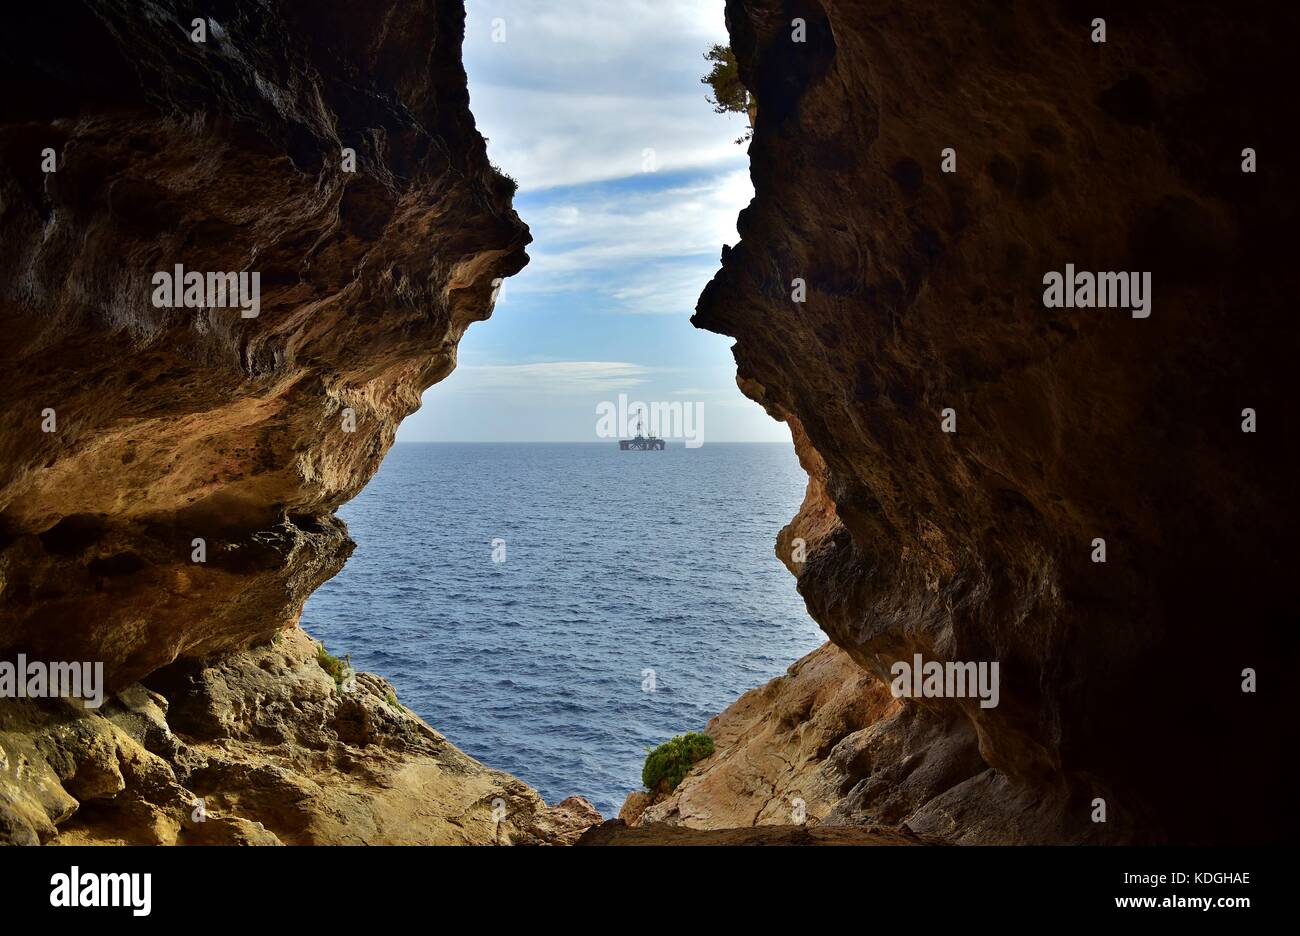 La vue de mer agitée, formé par l'érosion / érosion du calcaire maltais. La sortie de la grotte se trouve face à la mer, avec une plate-forme pétrolière dans la distance Banque D'Images